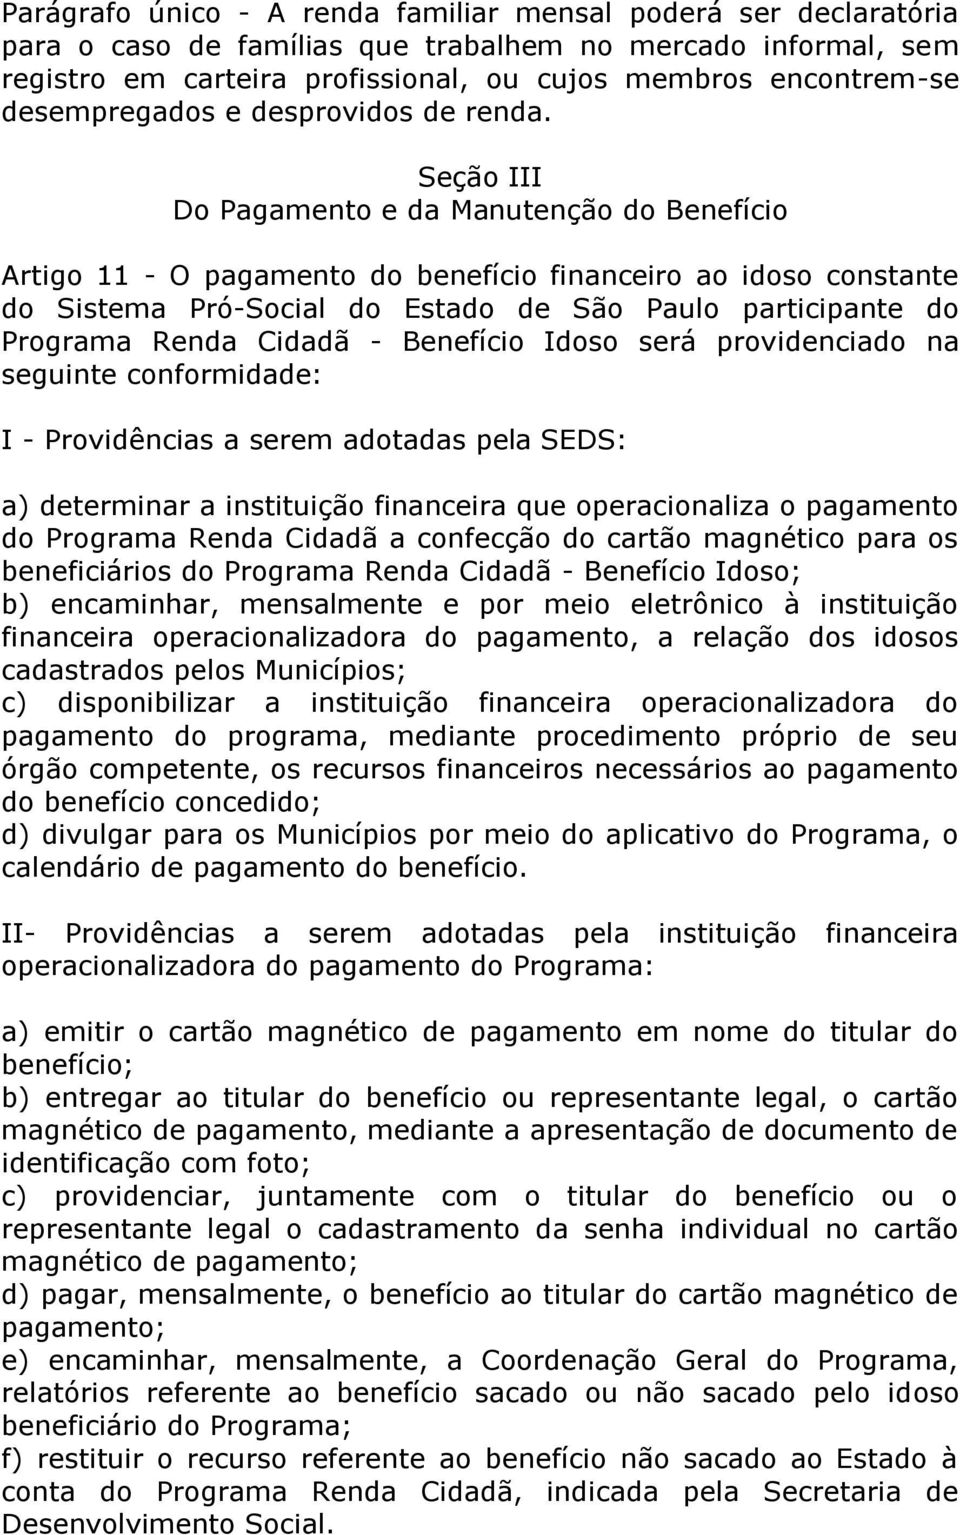 Seção III Do Pagamento e da Manutenção do Benefício Artigo 11 - O pagamento do benefício financeiro ao idoso constante do Sistema Pró-Social do Estado de São Paulo participante do Programa Renda